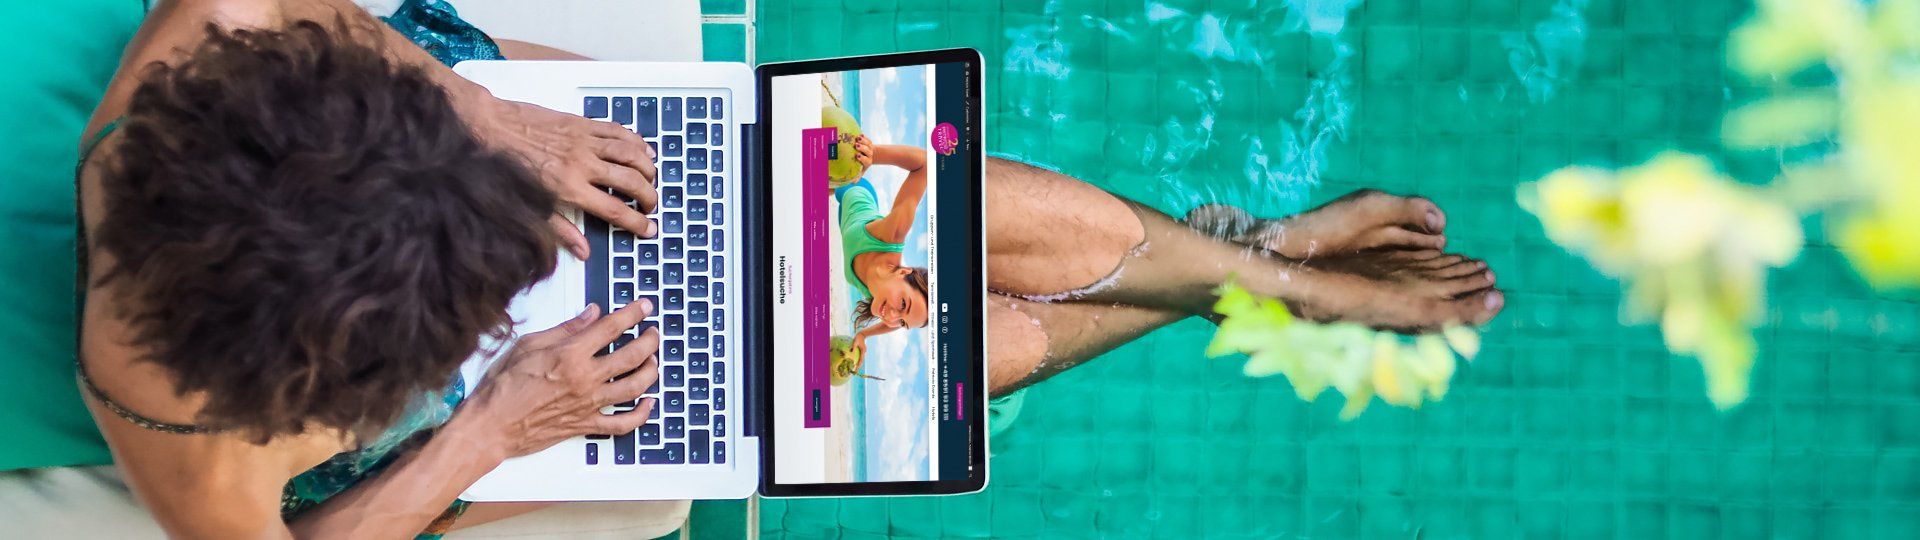 Frau mit Laptop am Pool, Füße im Wasser